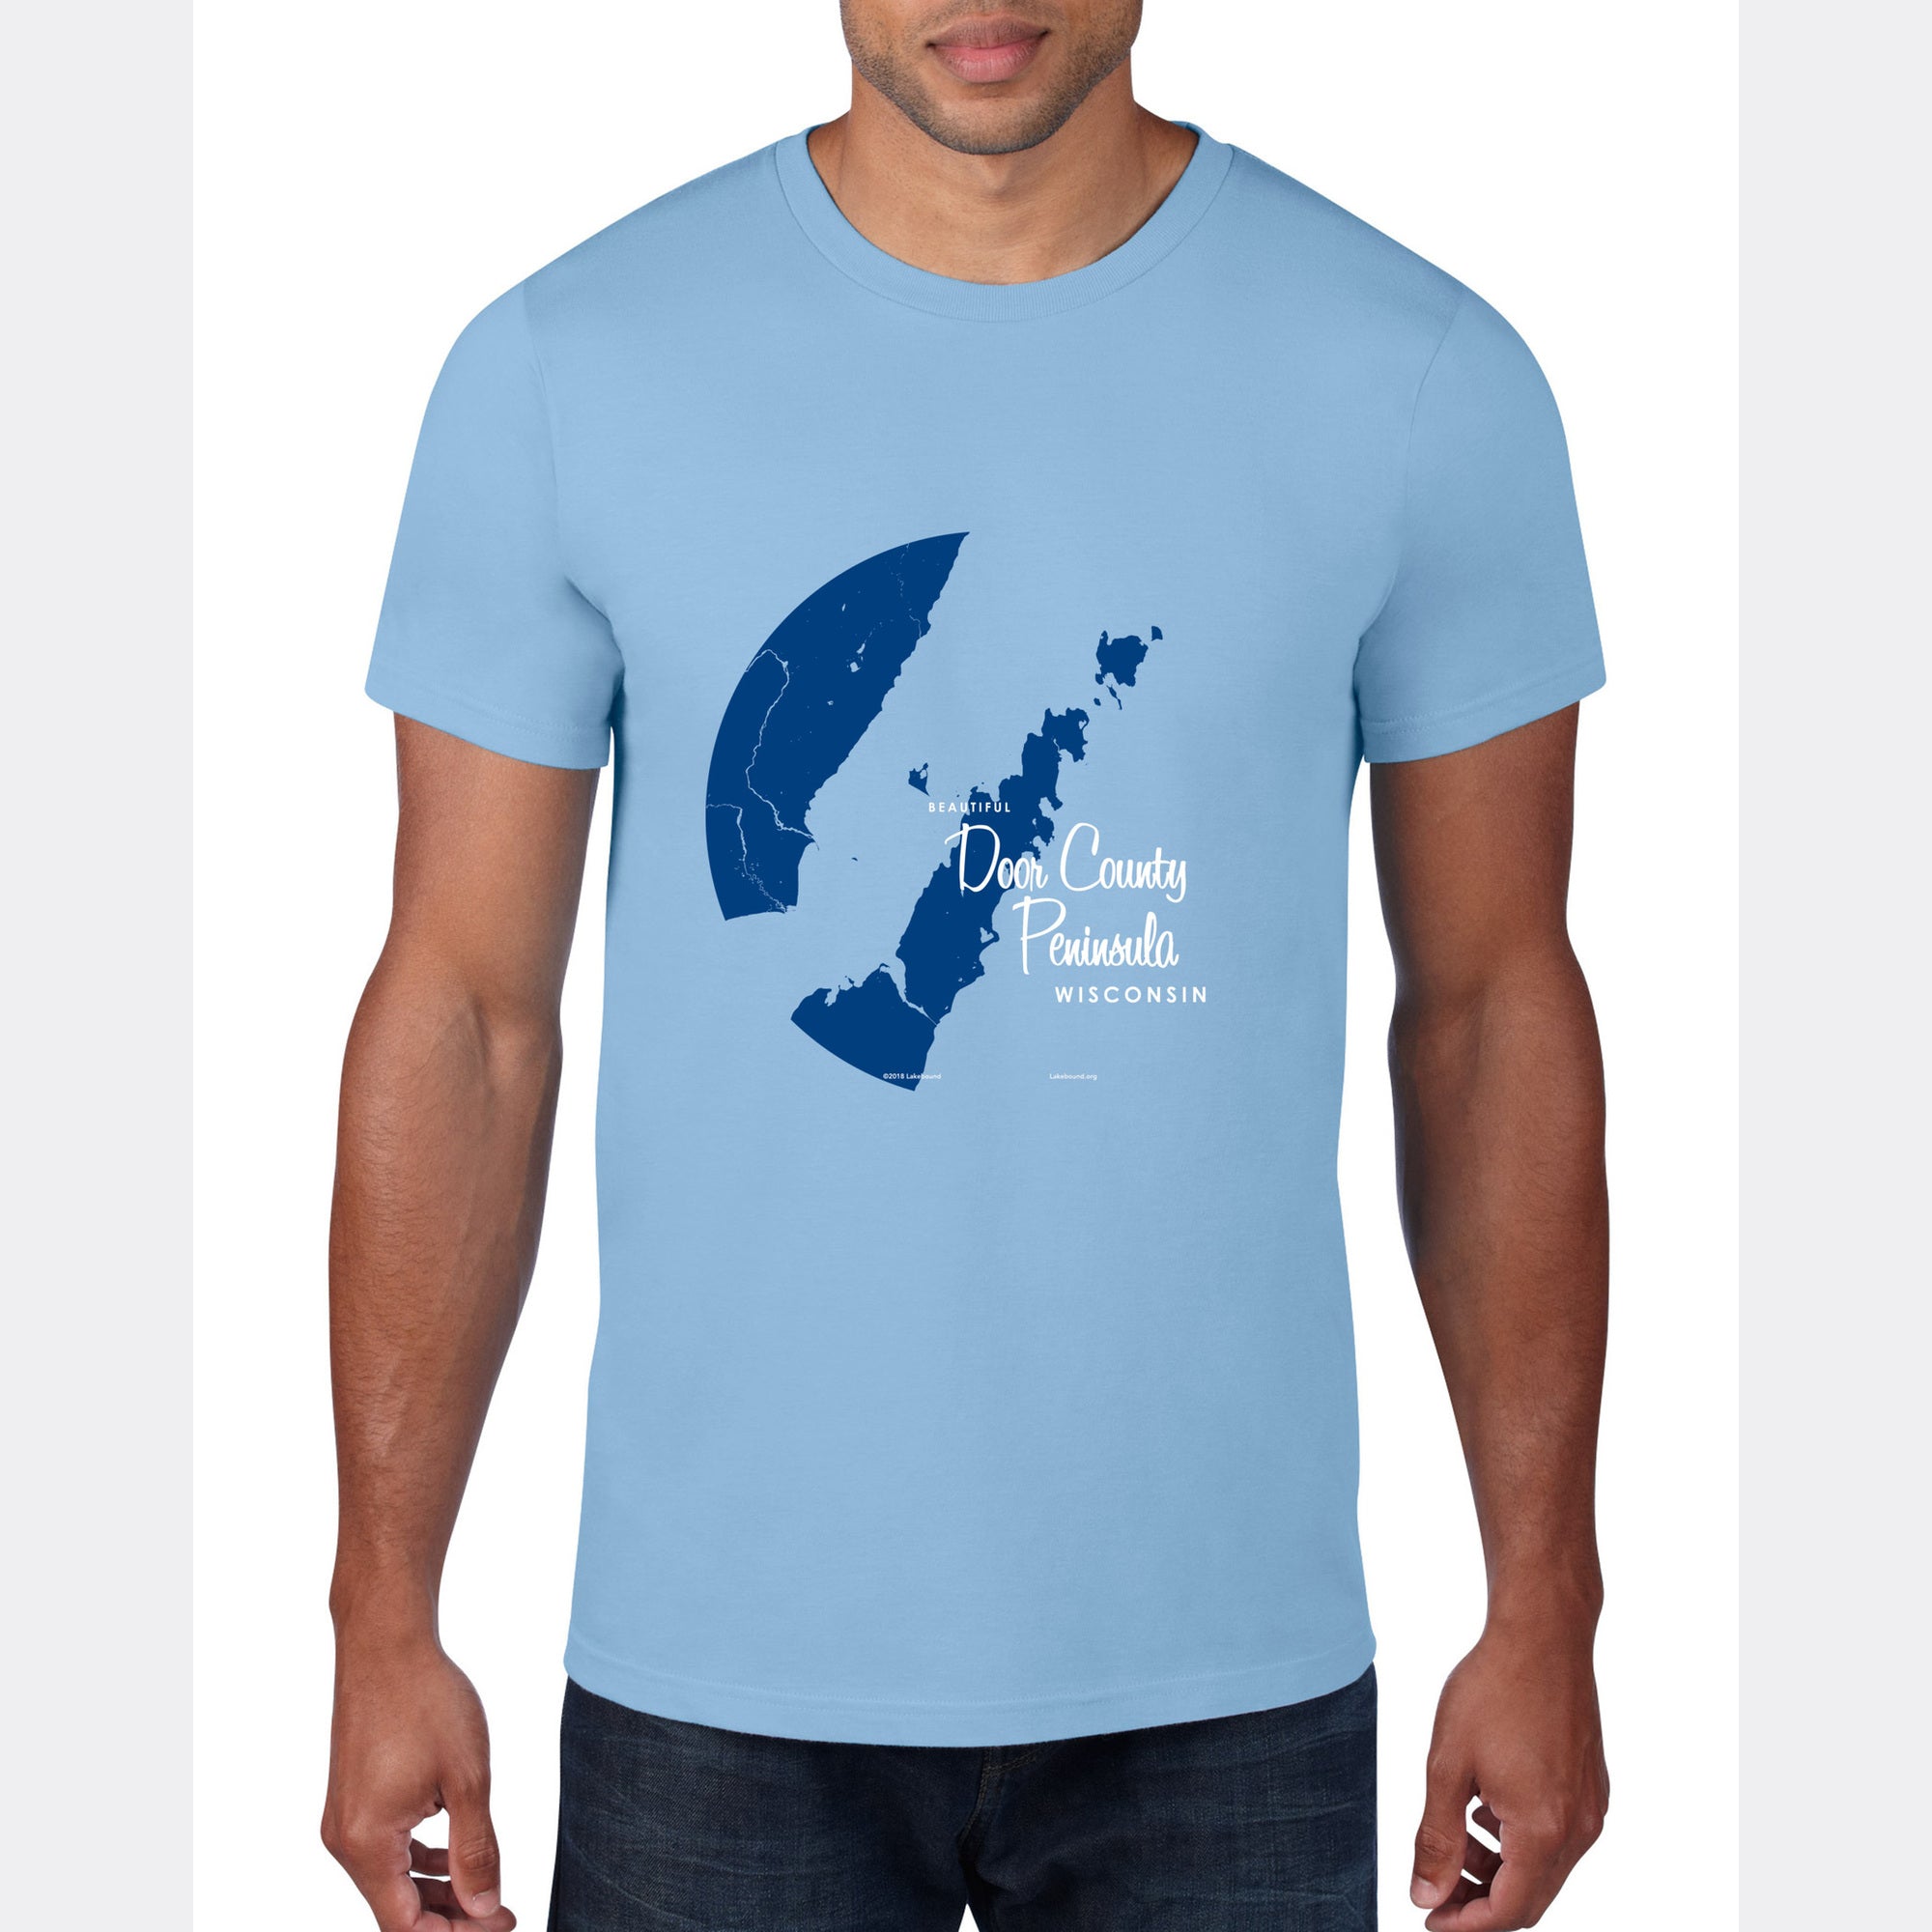 Door County Peninsula Wisconsin, T-Shirt